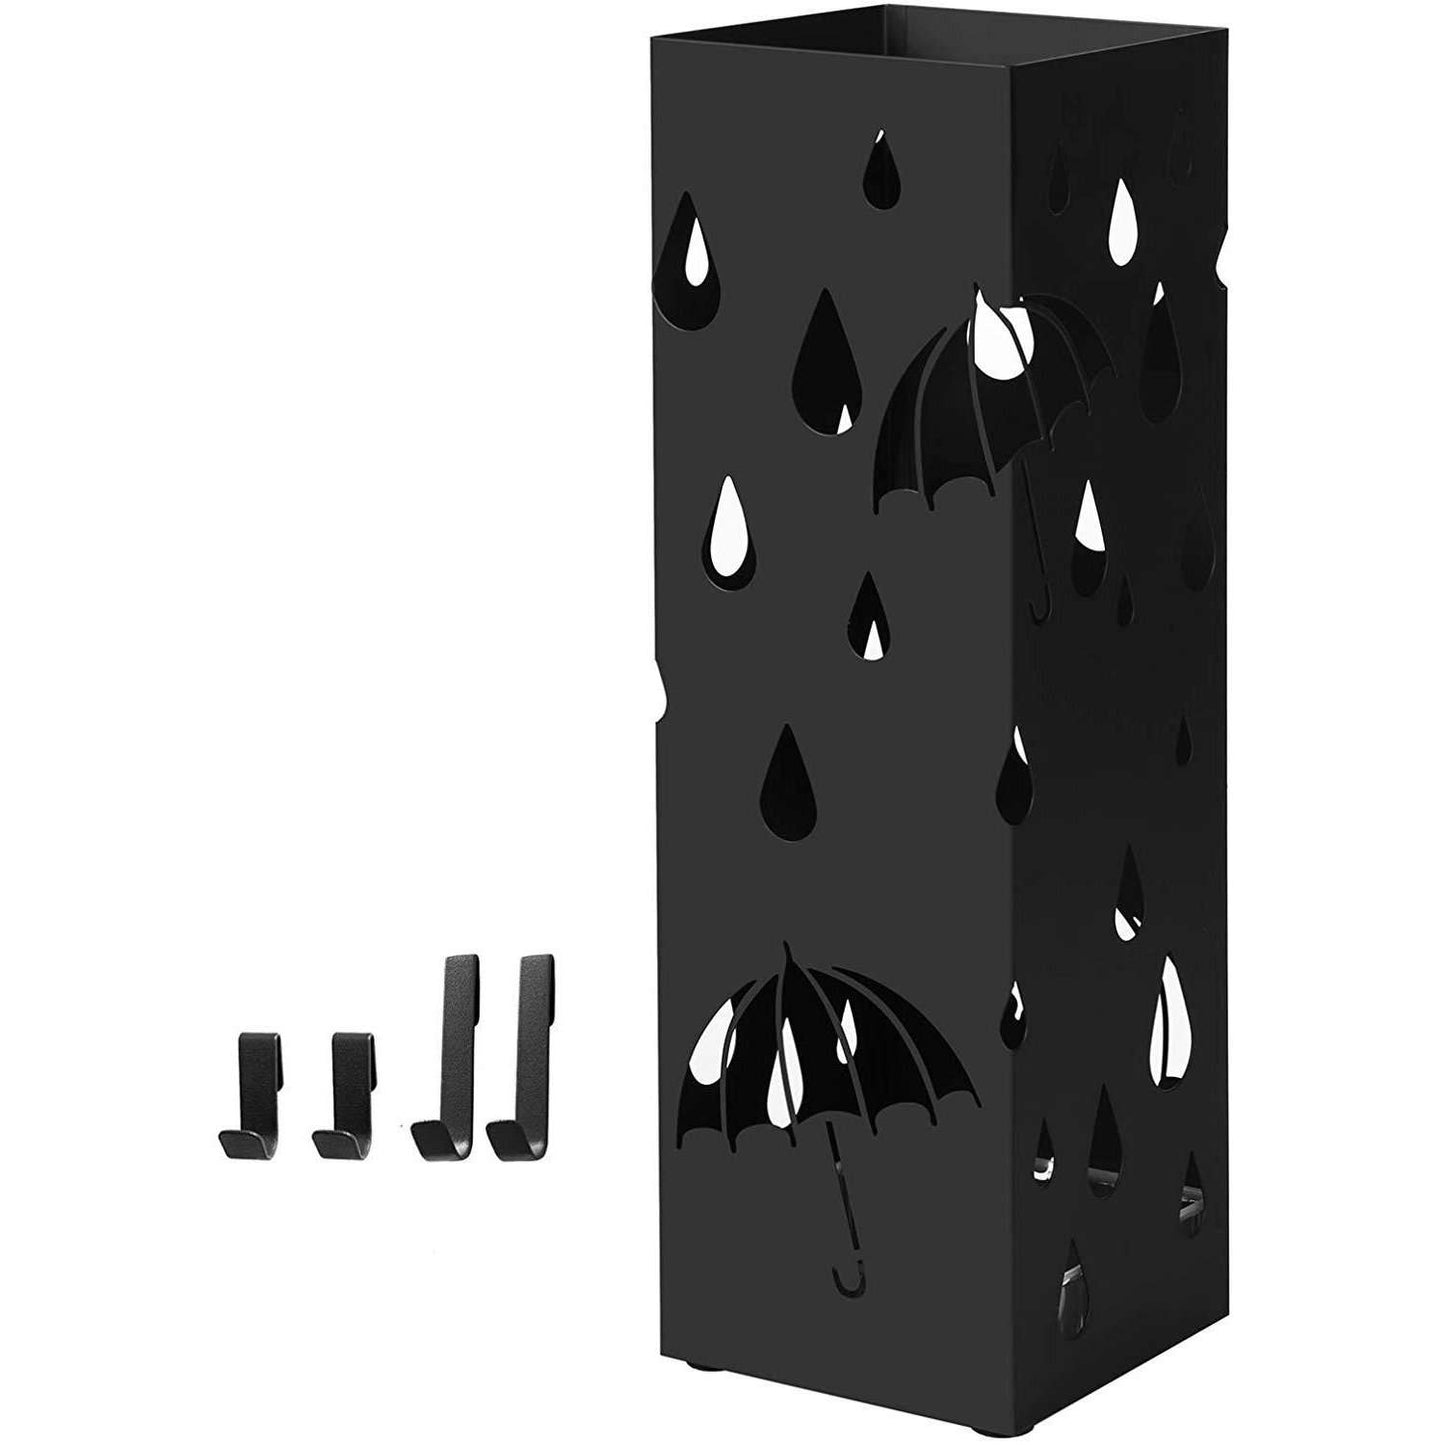 Porte-parapluie en métal de Nancy - Porte-parapluie - Panier à parapluies - Porte-parapluie - Noir